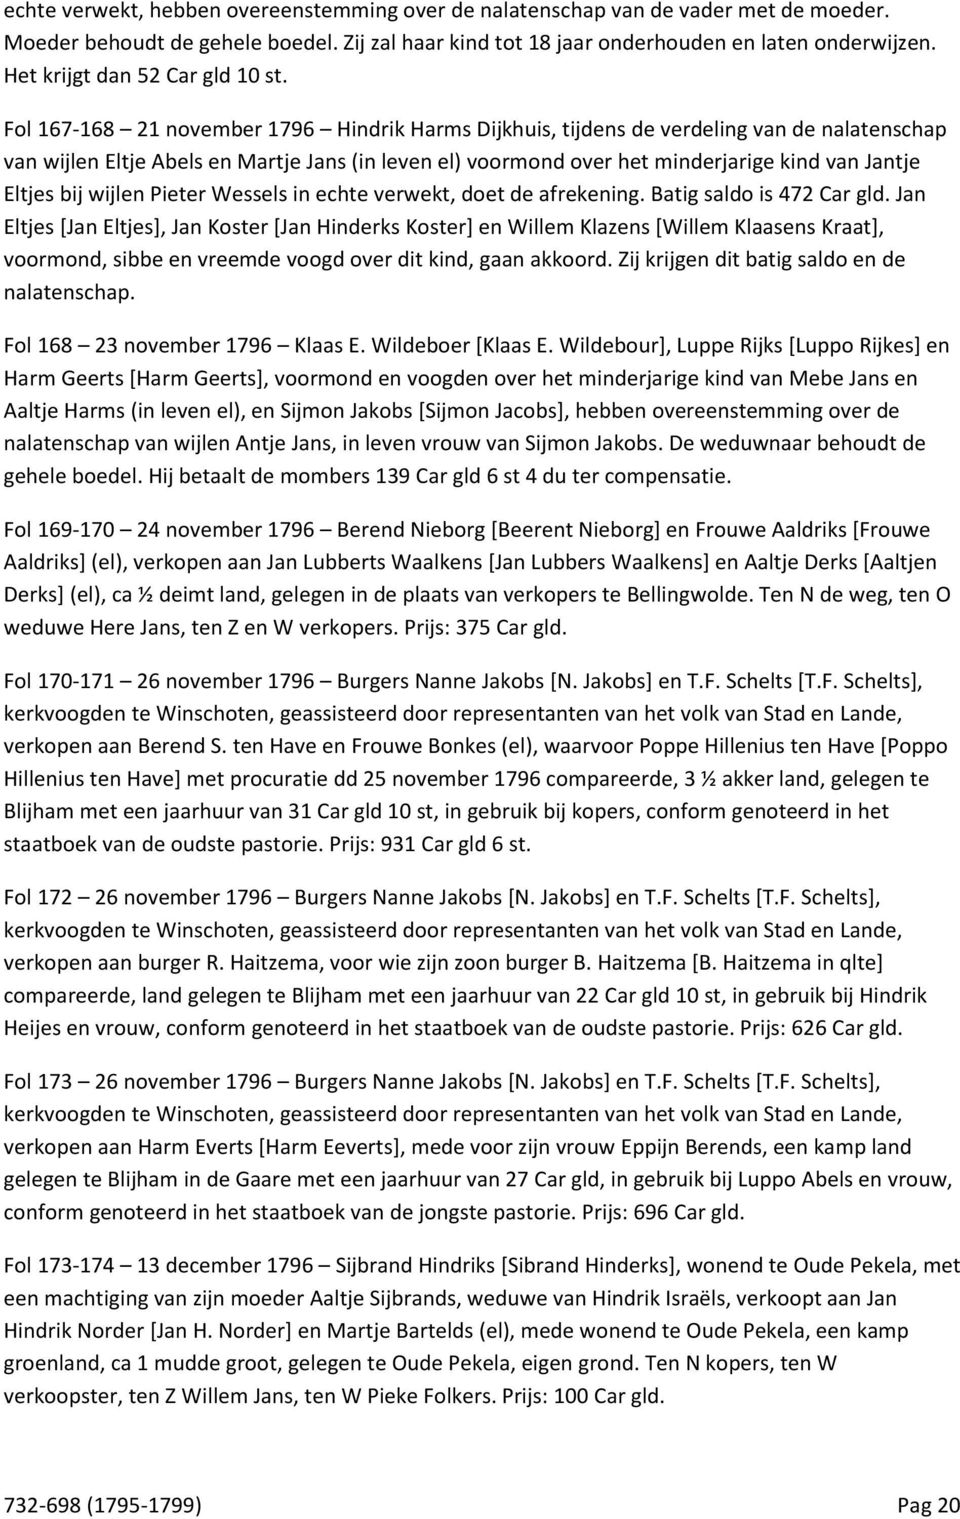 Fol 167-168 21 november 1796 Hindrik Harms Dijkhuis, tijdens de verdeling van de nalatenschap van wijlen Eltje Abels en Martje Jans (in leven el) voormond over het minderjarige kind van Jantje Eltjes